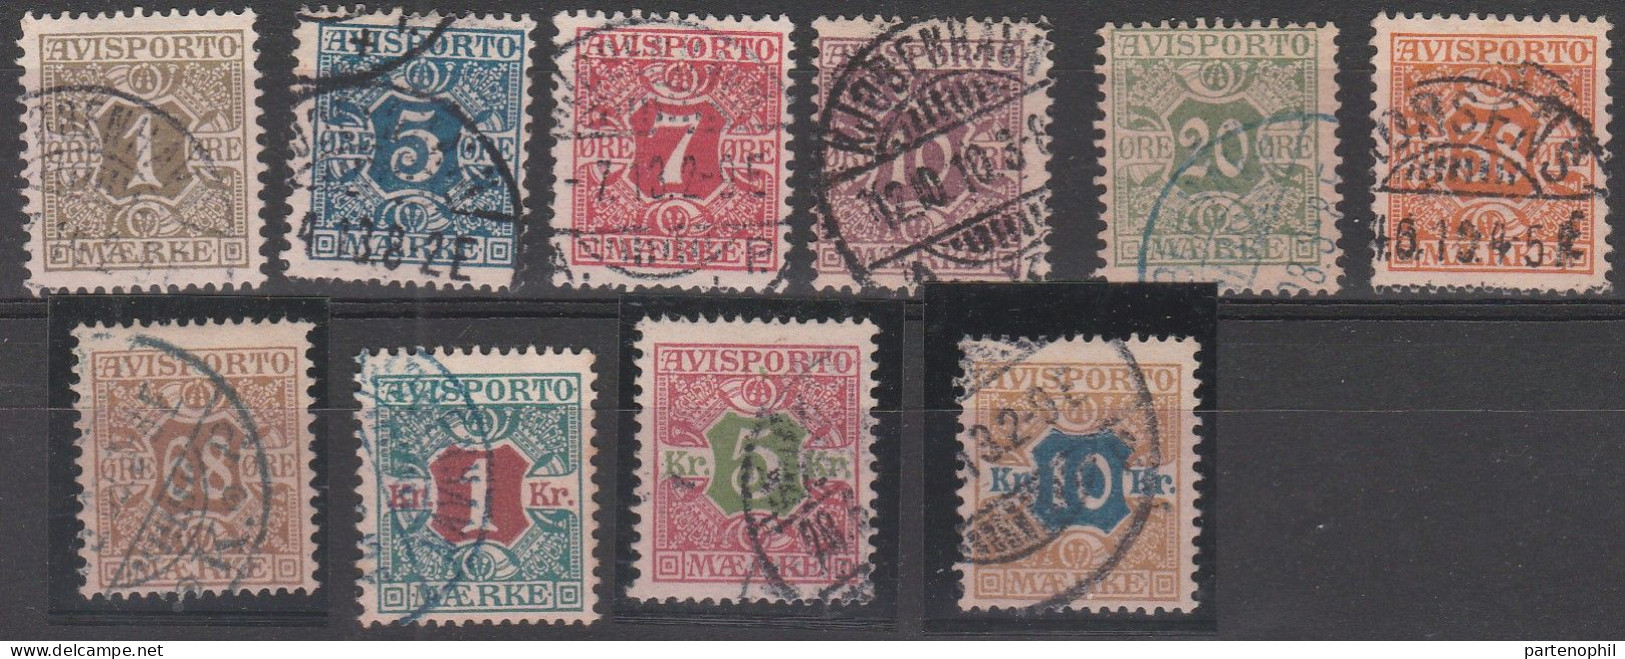 458 - Denmark Danimarca 1907 - Giornali - Cifra Al Centro N. 1/10. Cat. € 180,00. SPL - Gebruikt